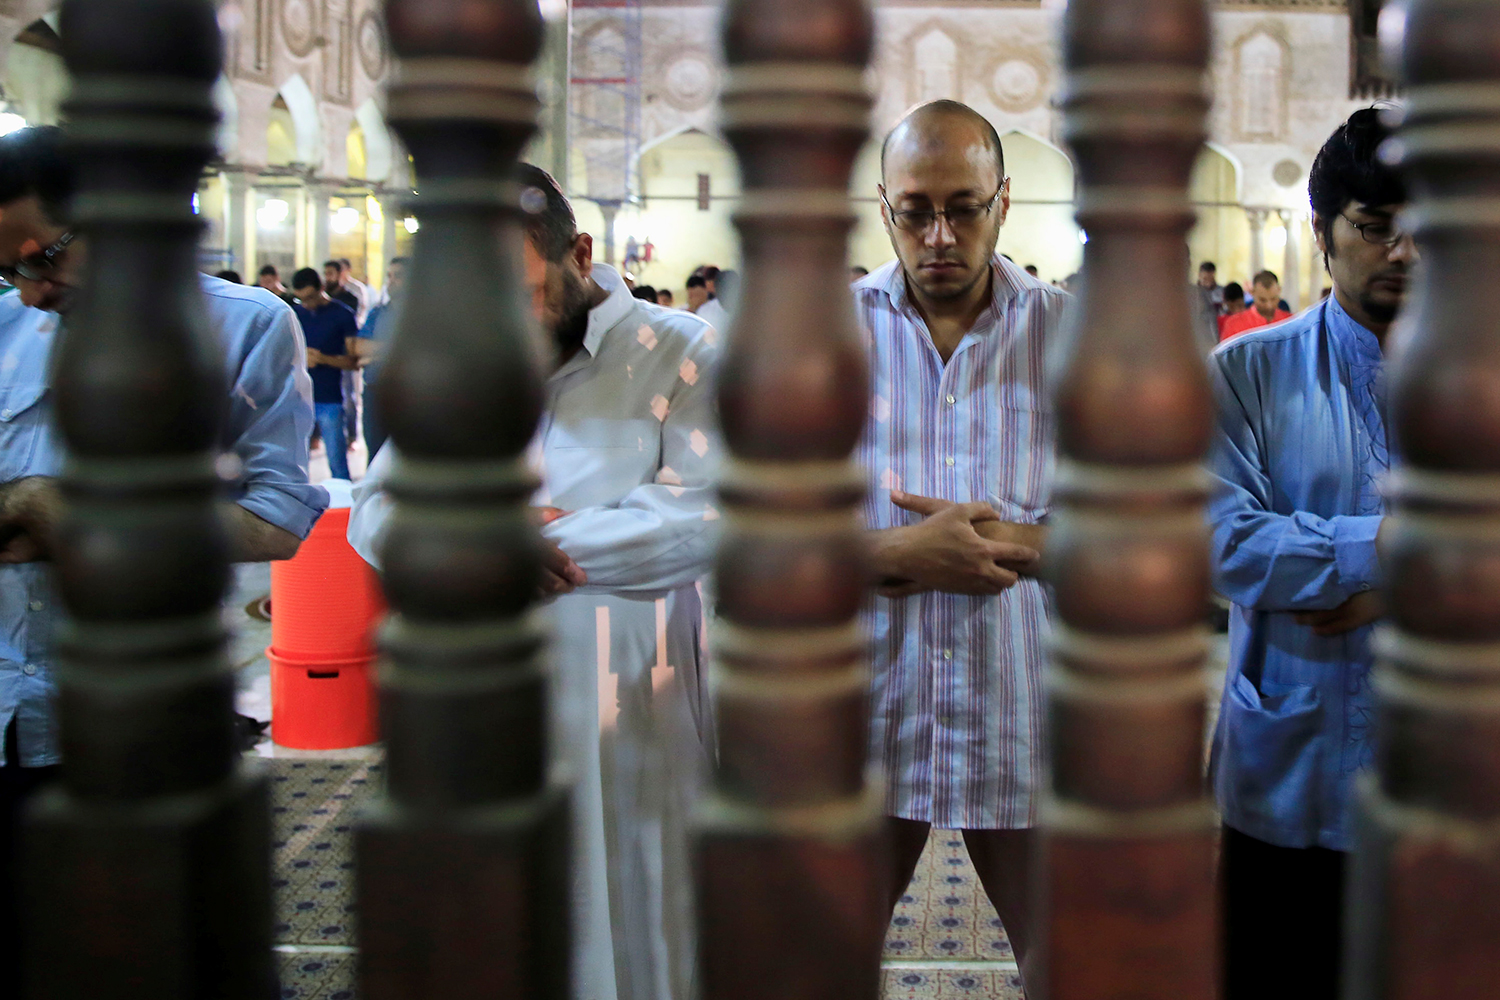 Egipto pone cámaras de vigilancia en mezquitas y bibliotecas para prevenir la radicalización